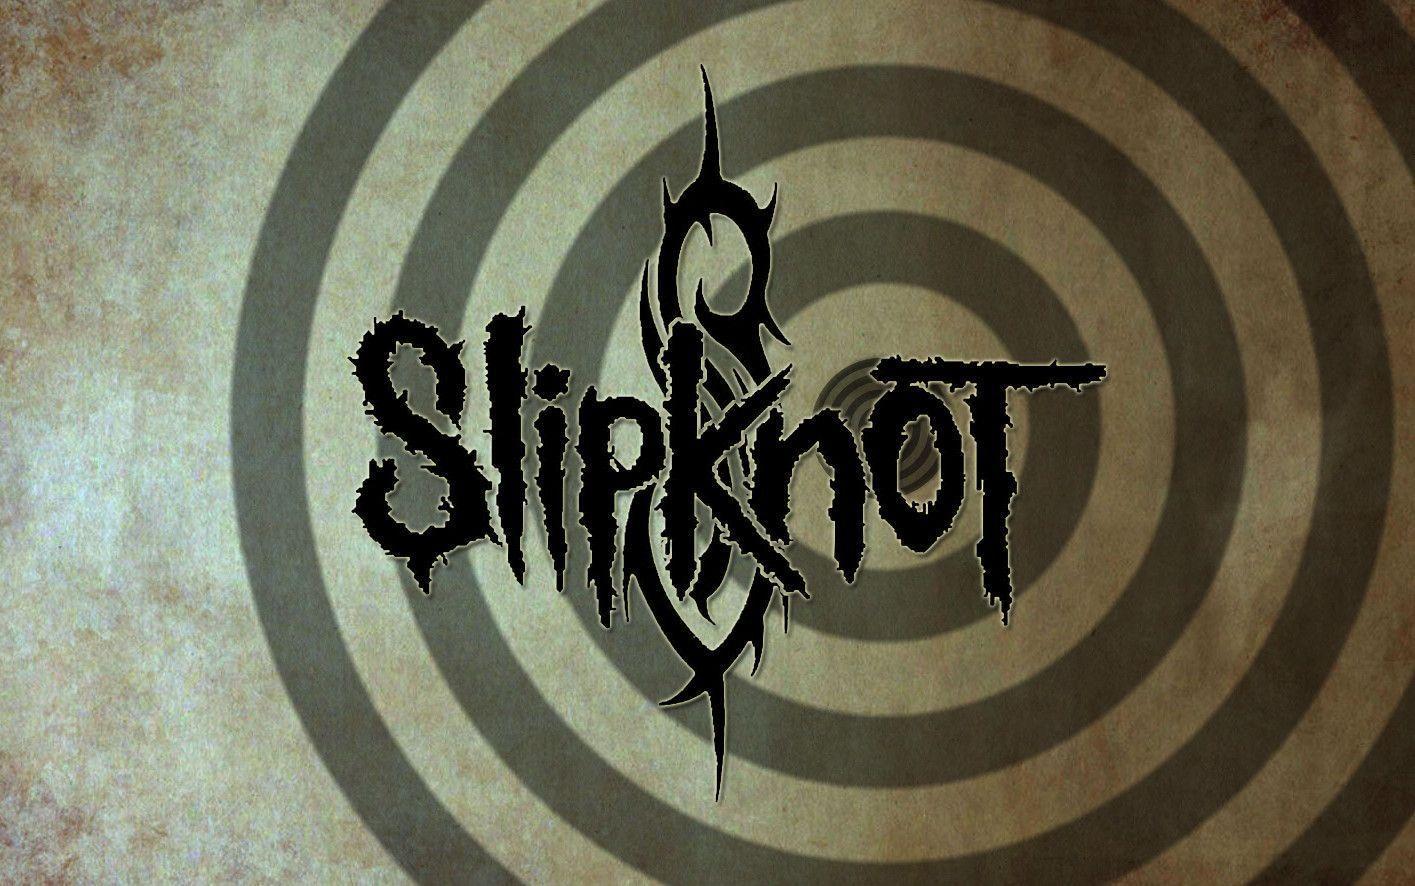 Slipknot Wallpaper (Wallpaper 1 3 Of 3)